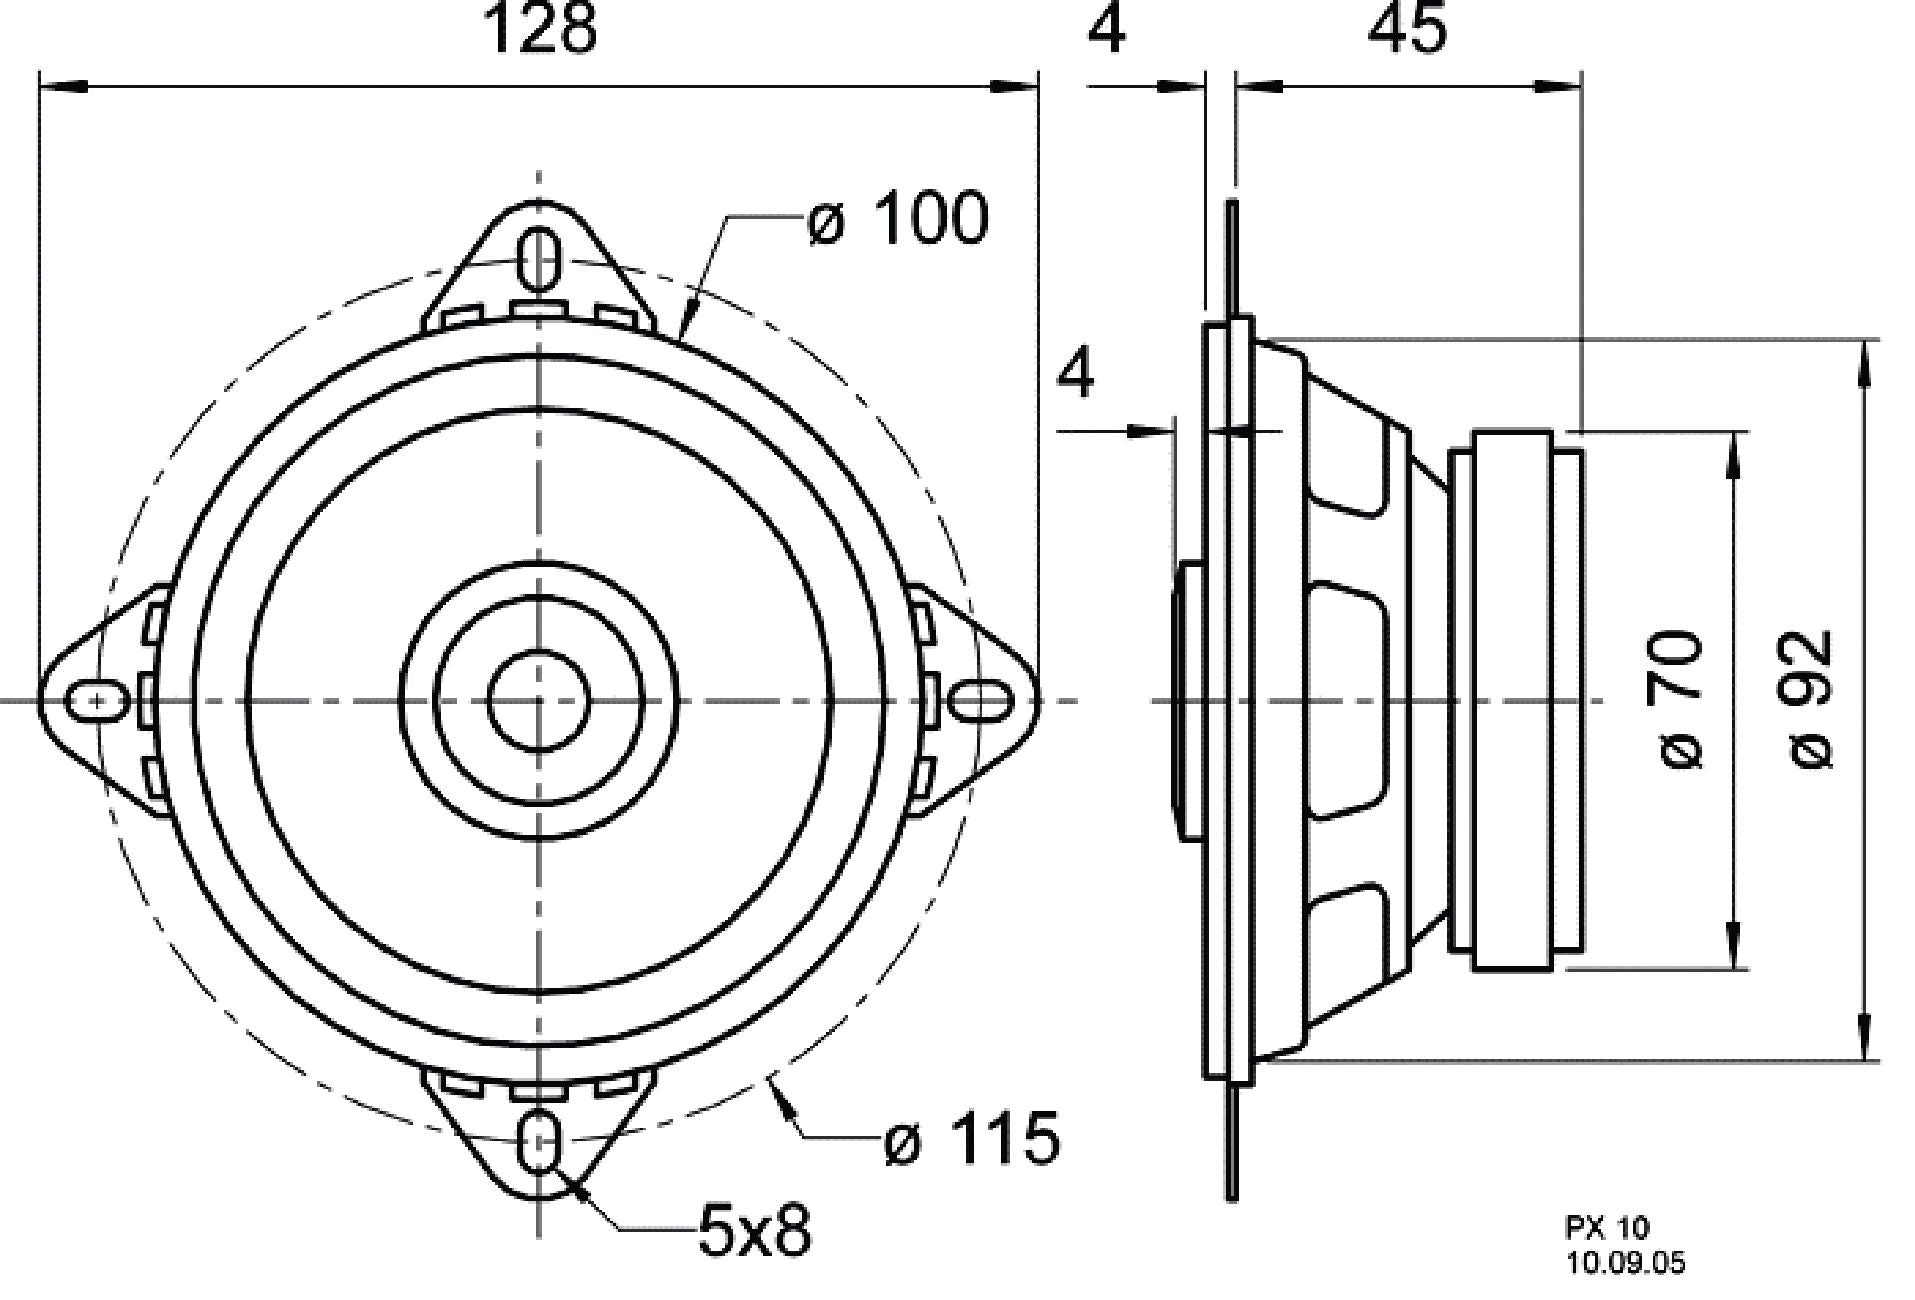 10 cm (4") 2-Wege-Koaxiallautsprecher mit Standardkorb und piezoelektrischem Hochtöner